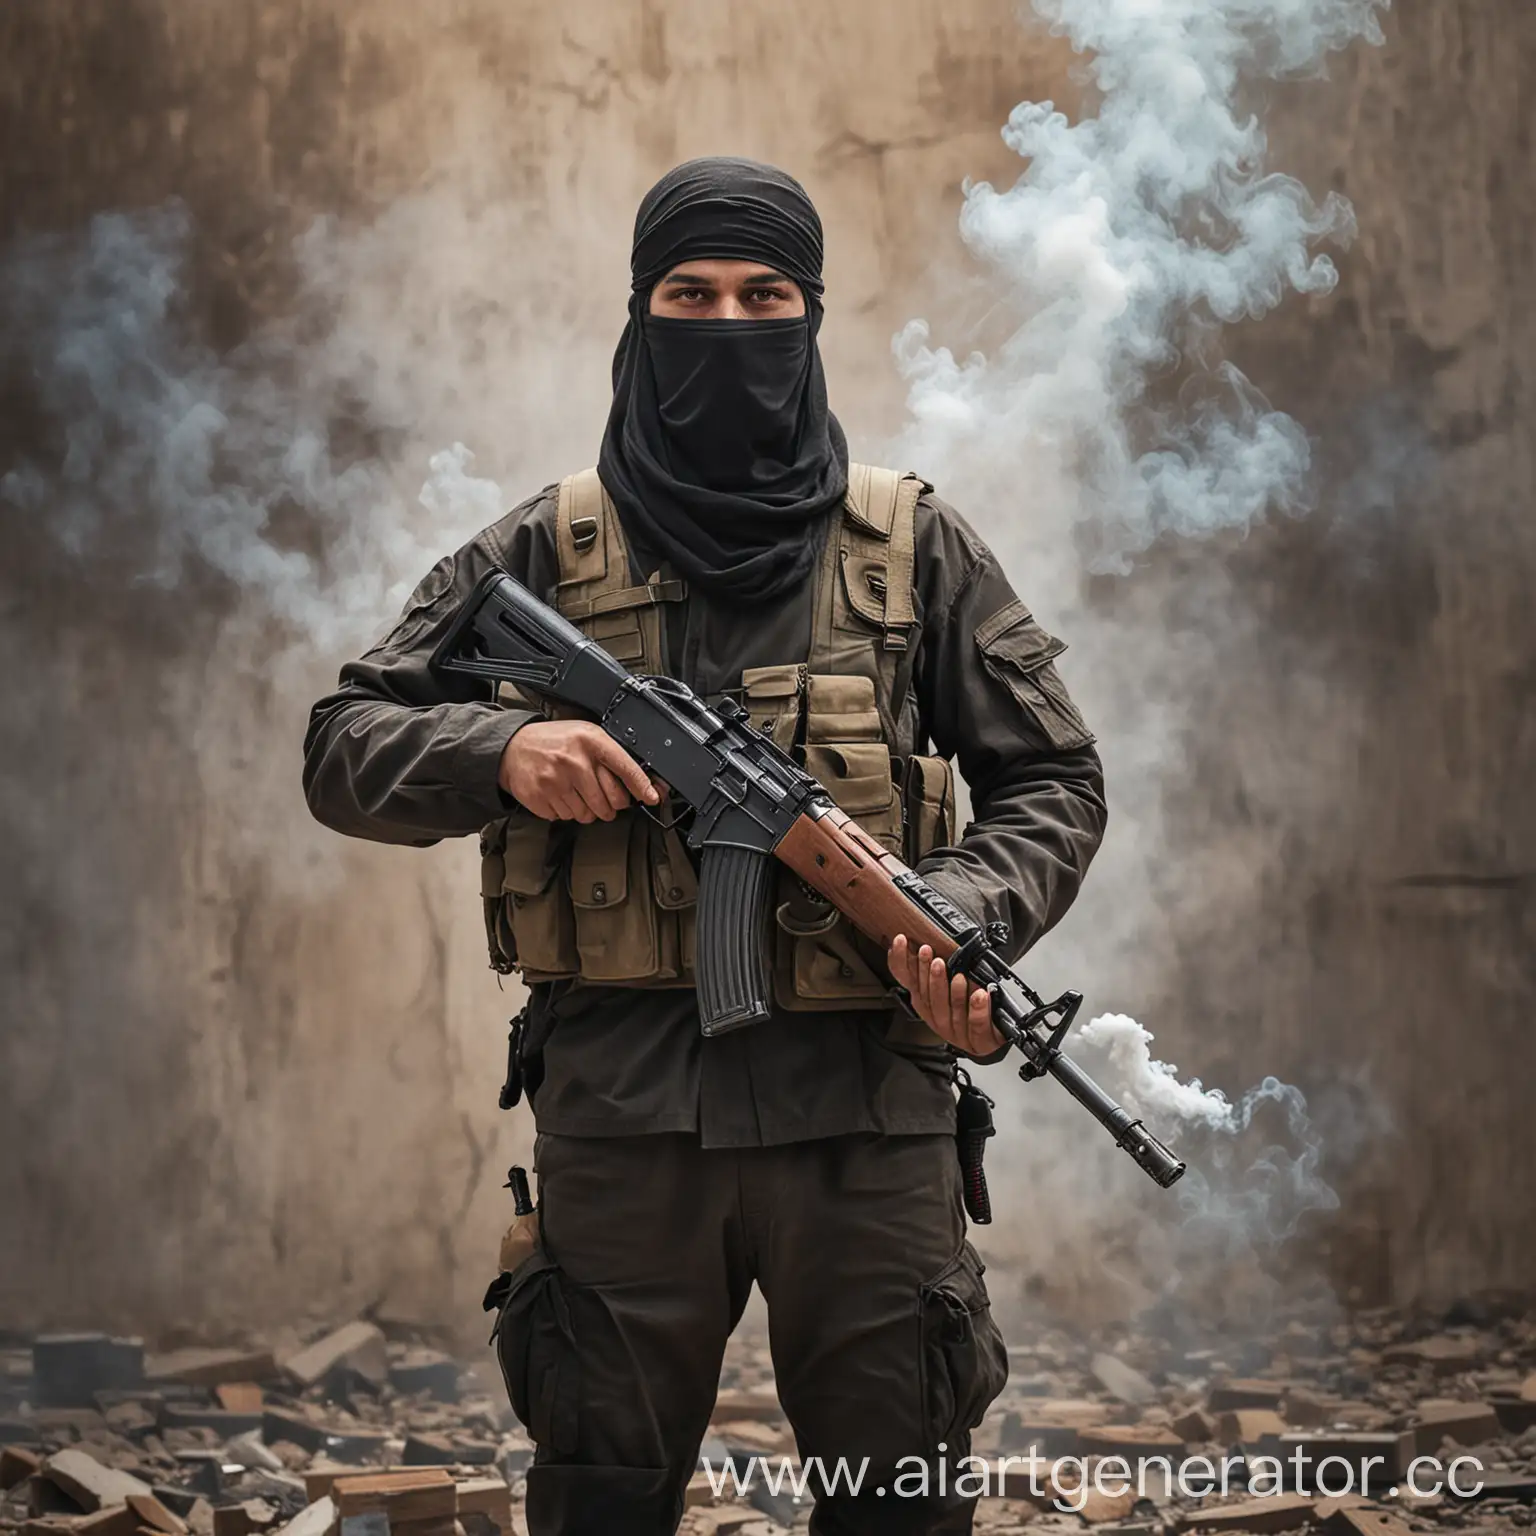 терорист стоит с ак-47 и курит